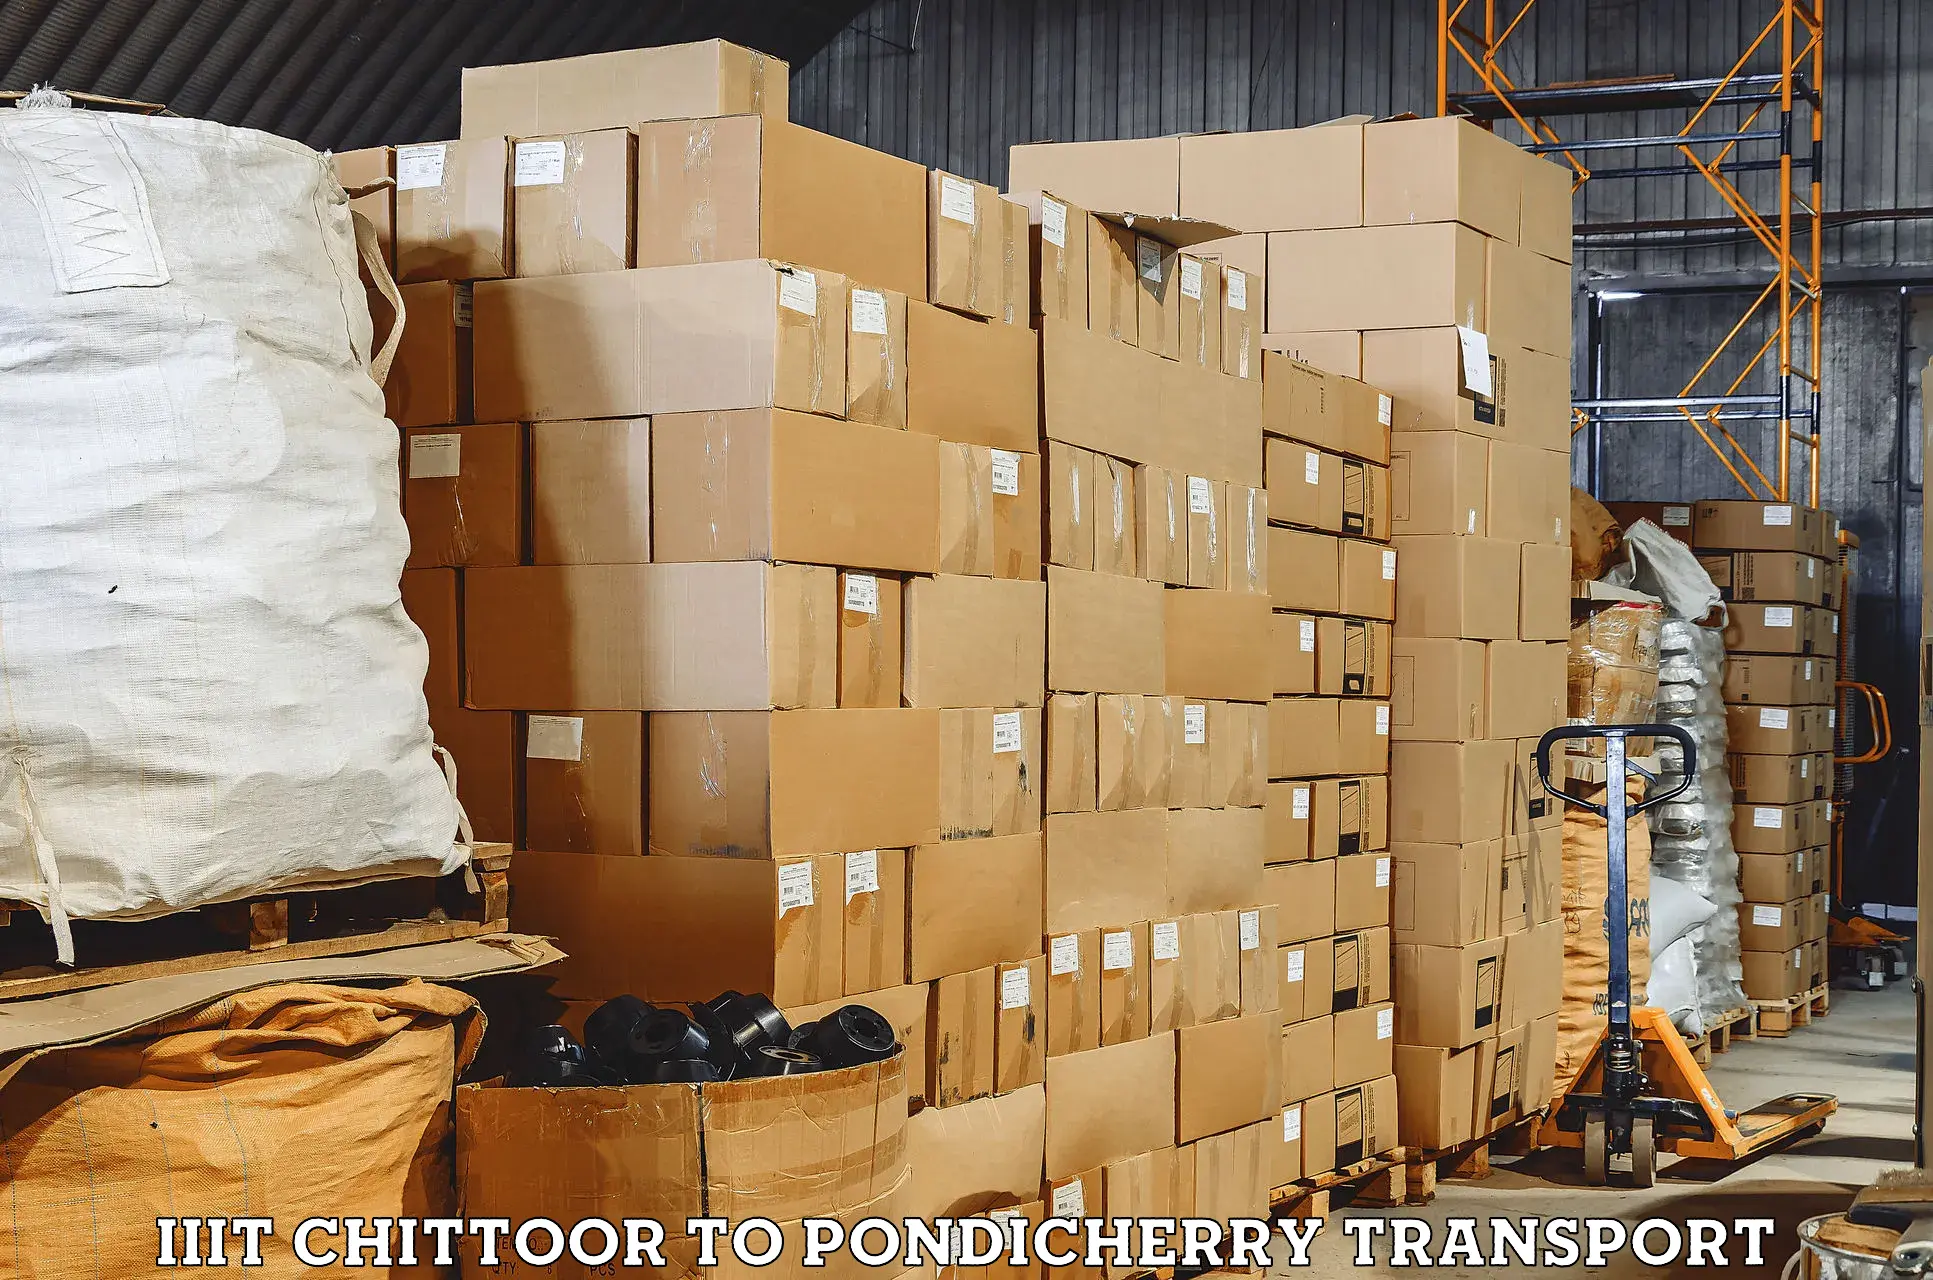 Furniture transport service IIIT Chittoor to Pondicherry